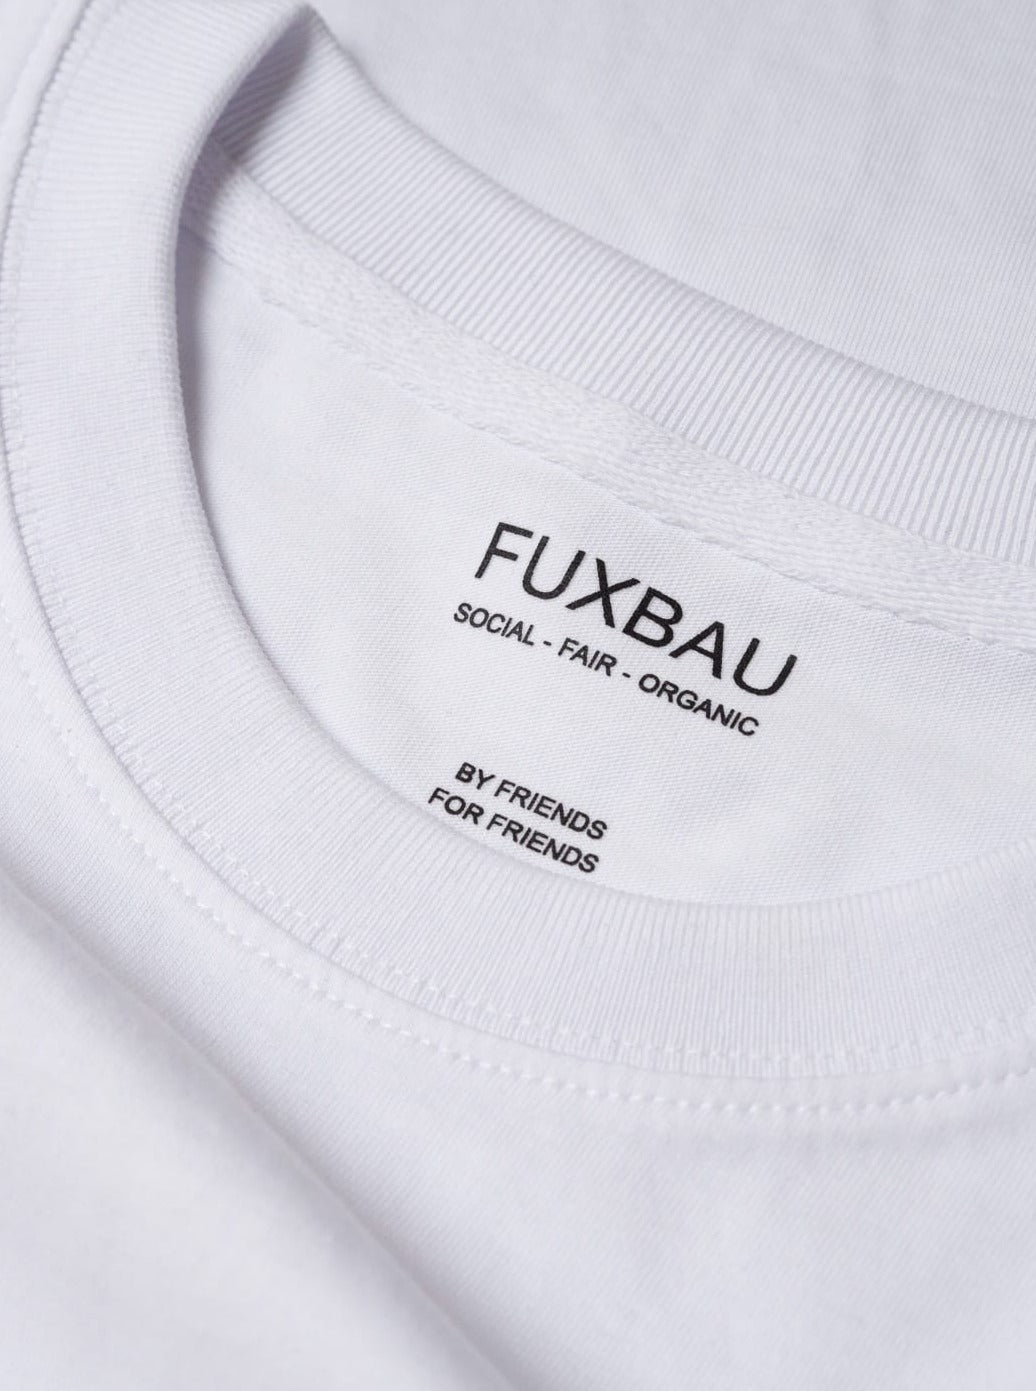 Detailbild eines nachhaltiges FUXBAU Basic T-Shirt in weiß mit einem schwarzen Imprint. Gefertigt aus 100% Biobaumwolle.